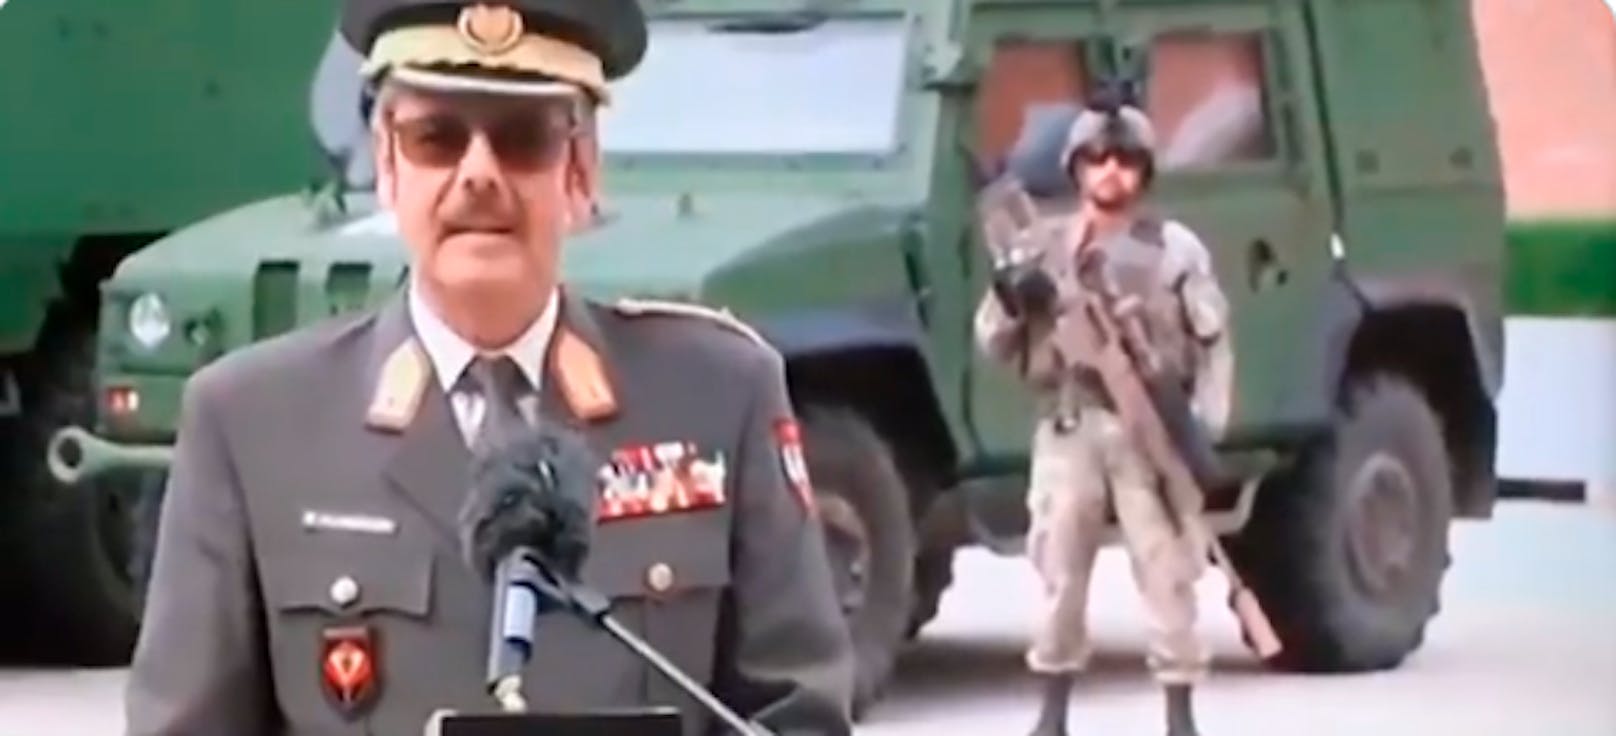 Während einer Pressekonferenz zur Zukunft der Miliz ist vor laufender Kamera ein Soldat kollabiert (9. Juli 2020)